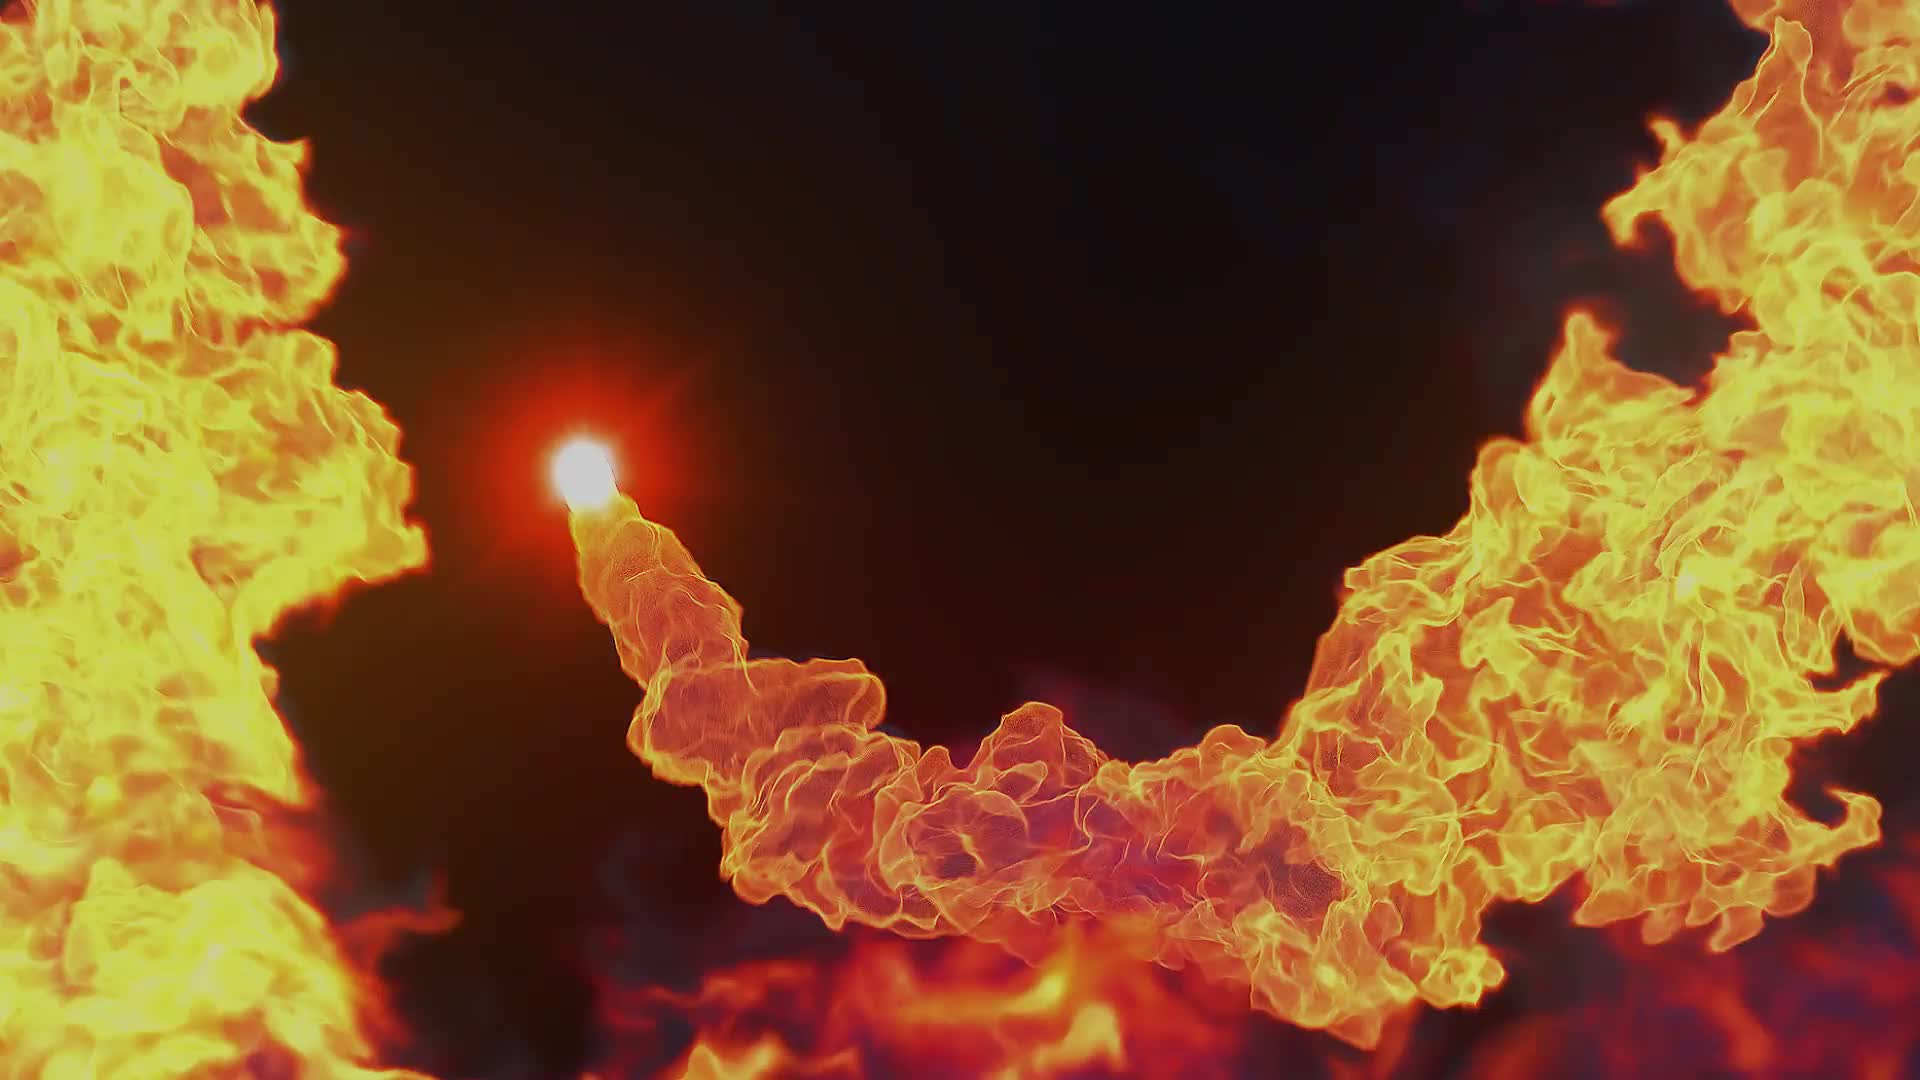 Fire Explosion Logo Reveal II Premire Pro Videohive 37550592 Premiere Pro Image 1